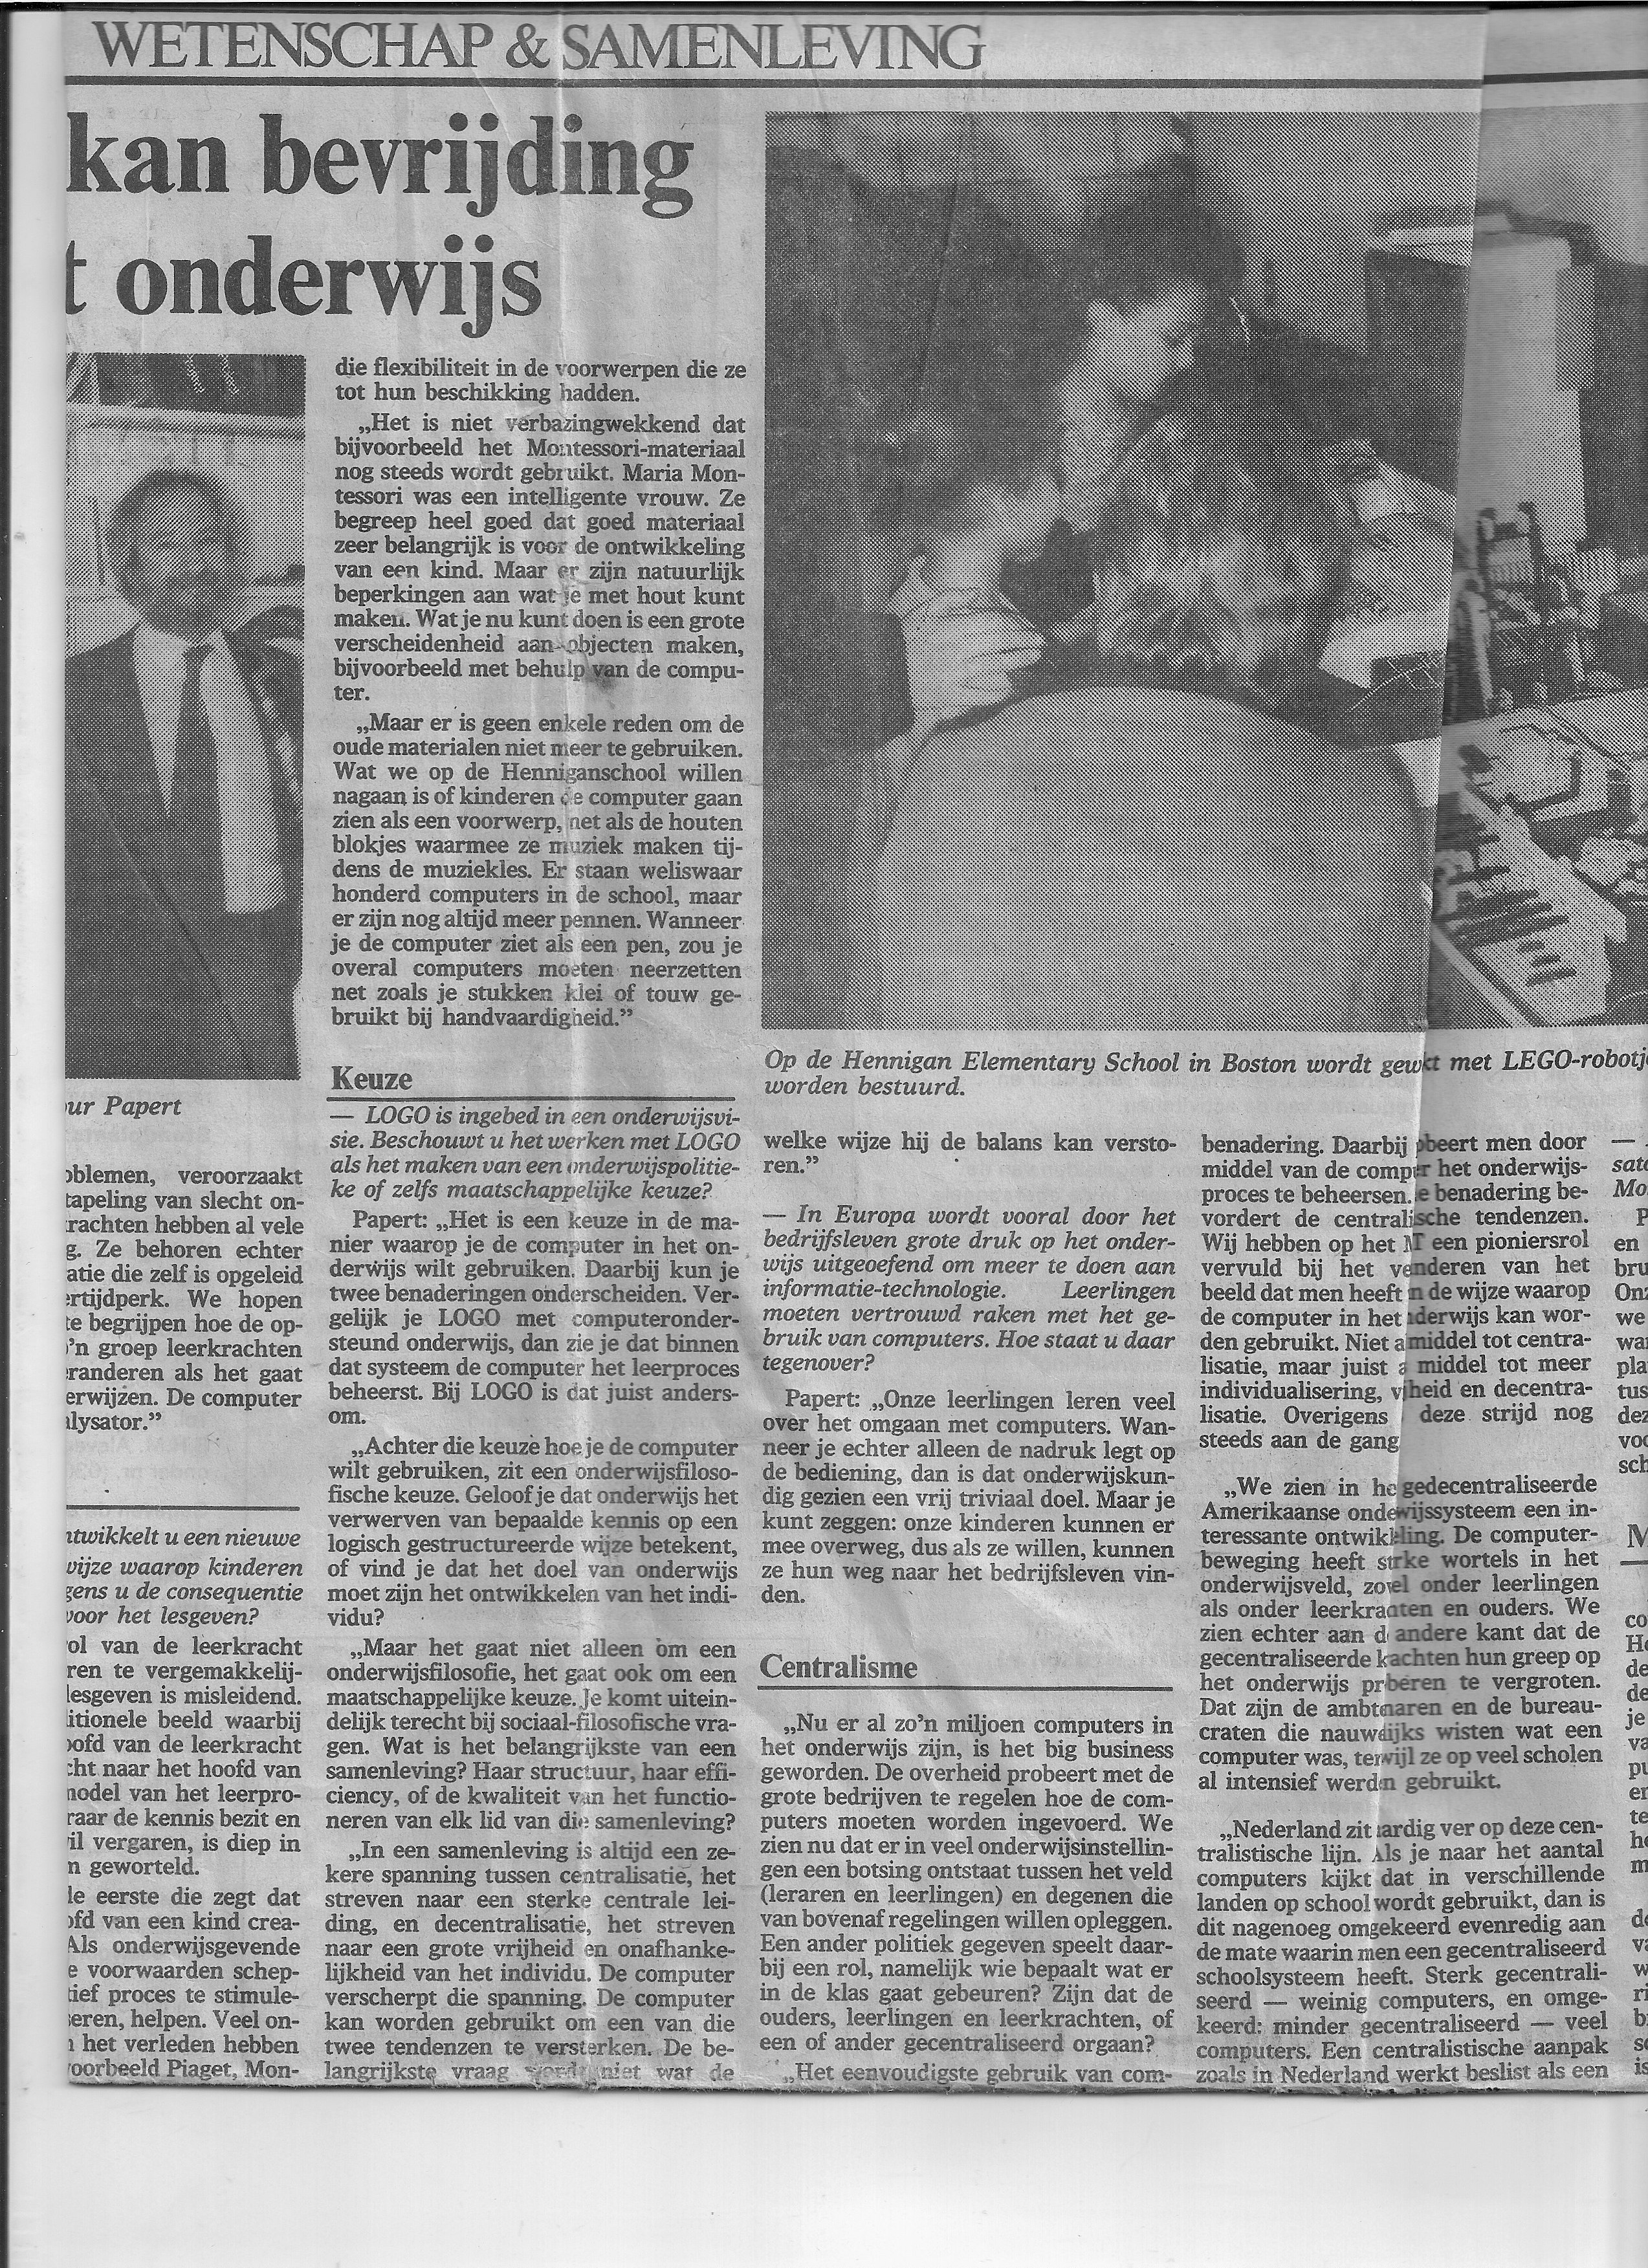 interview papert 2 1986 1